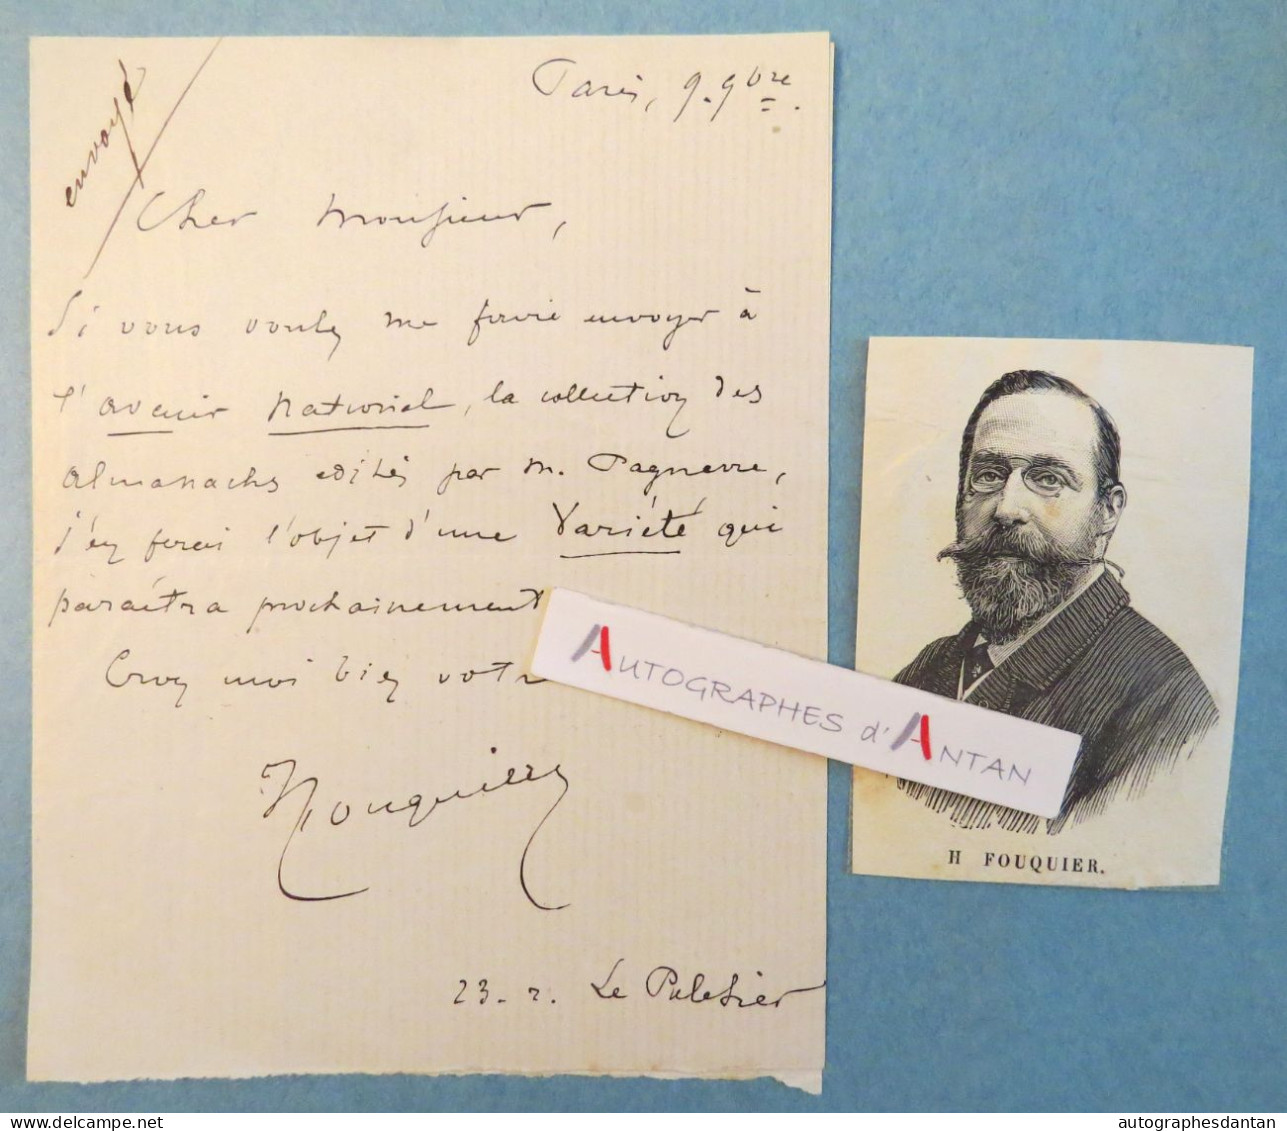 ● L.A.S Henry FOUQUIER écrivain Beau-père Georges Feydeau - Avenir National Collection Almanachs - Lettre Autographe - Writers